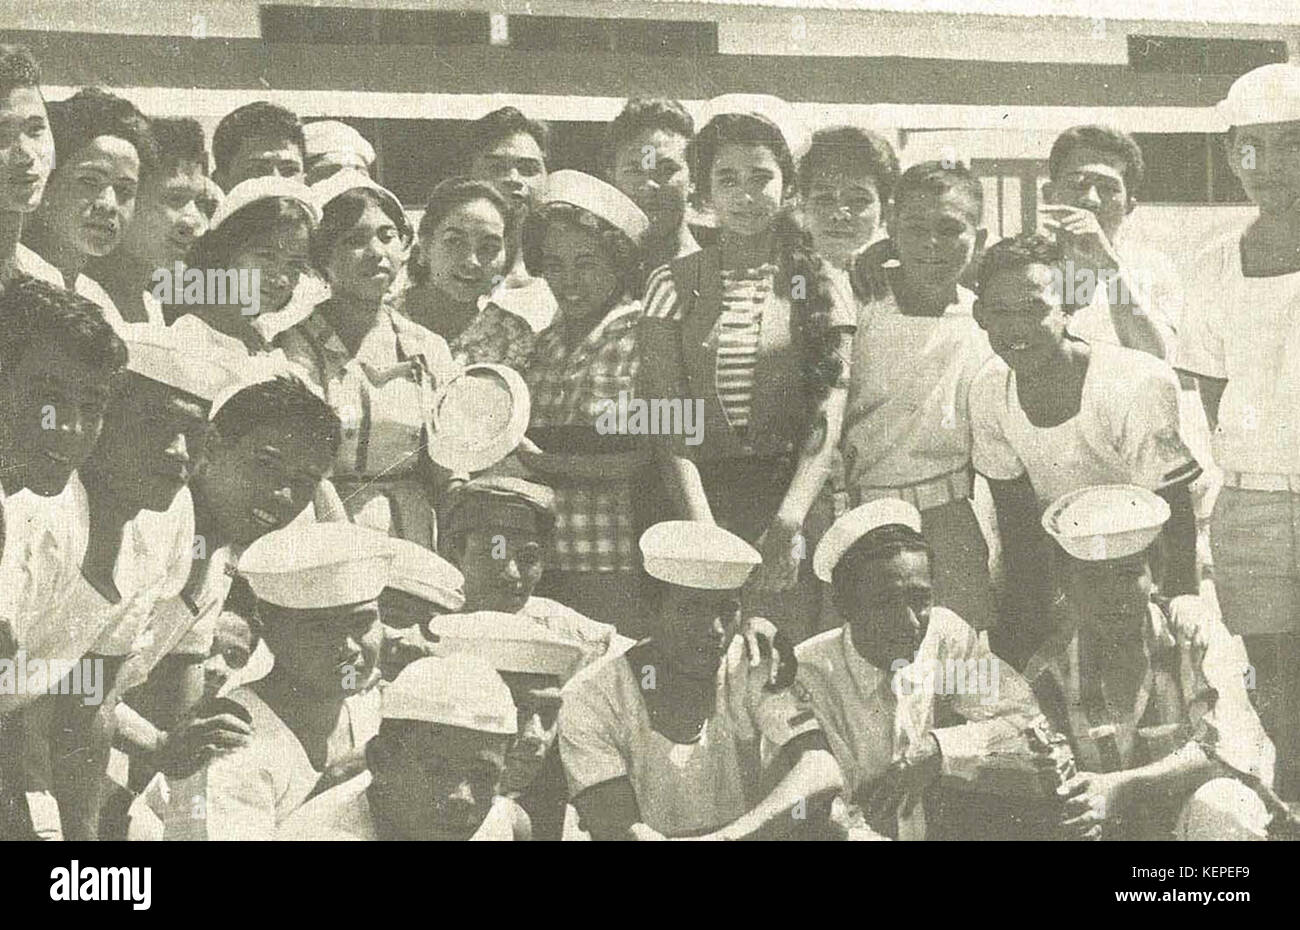 Las estrellas de cine con los marineros, Jalesveva Jayamahe, p199 Foto de stock